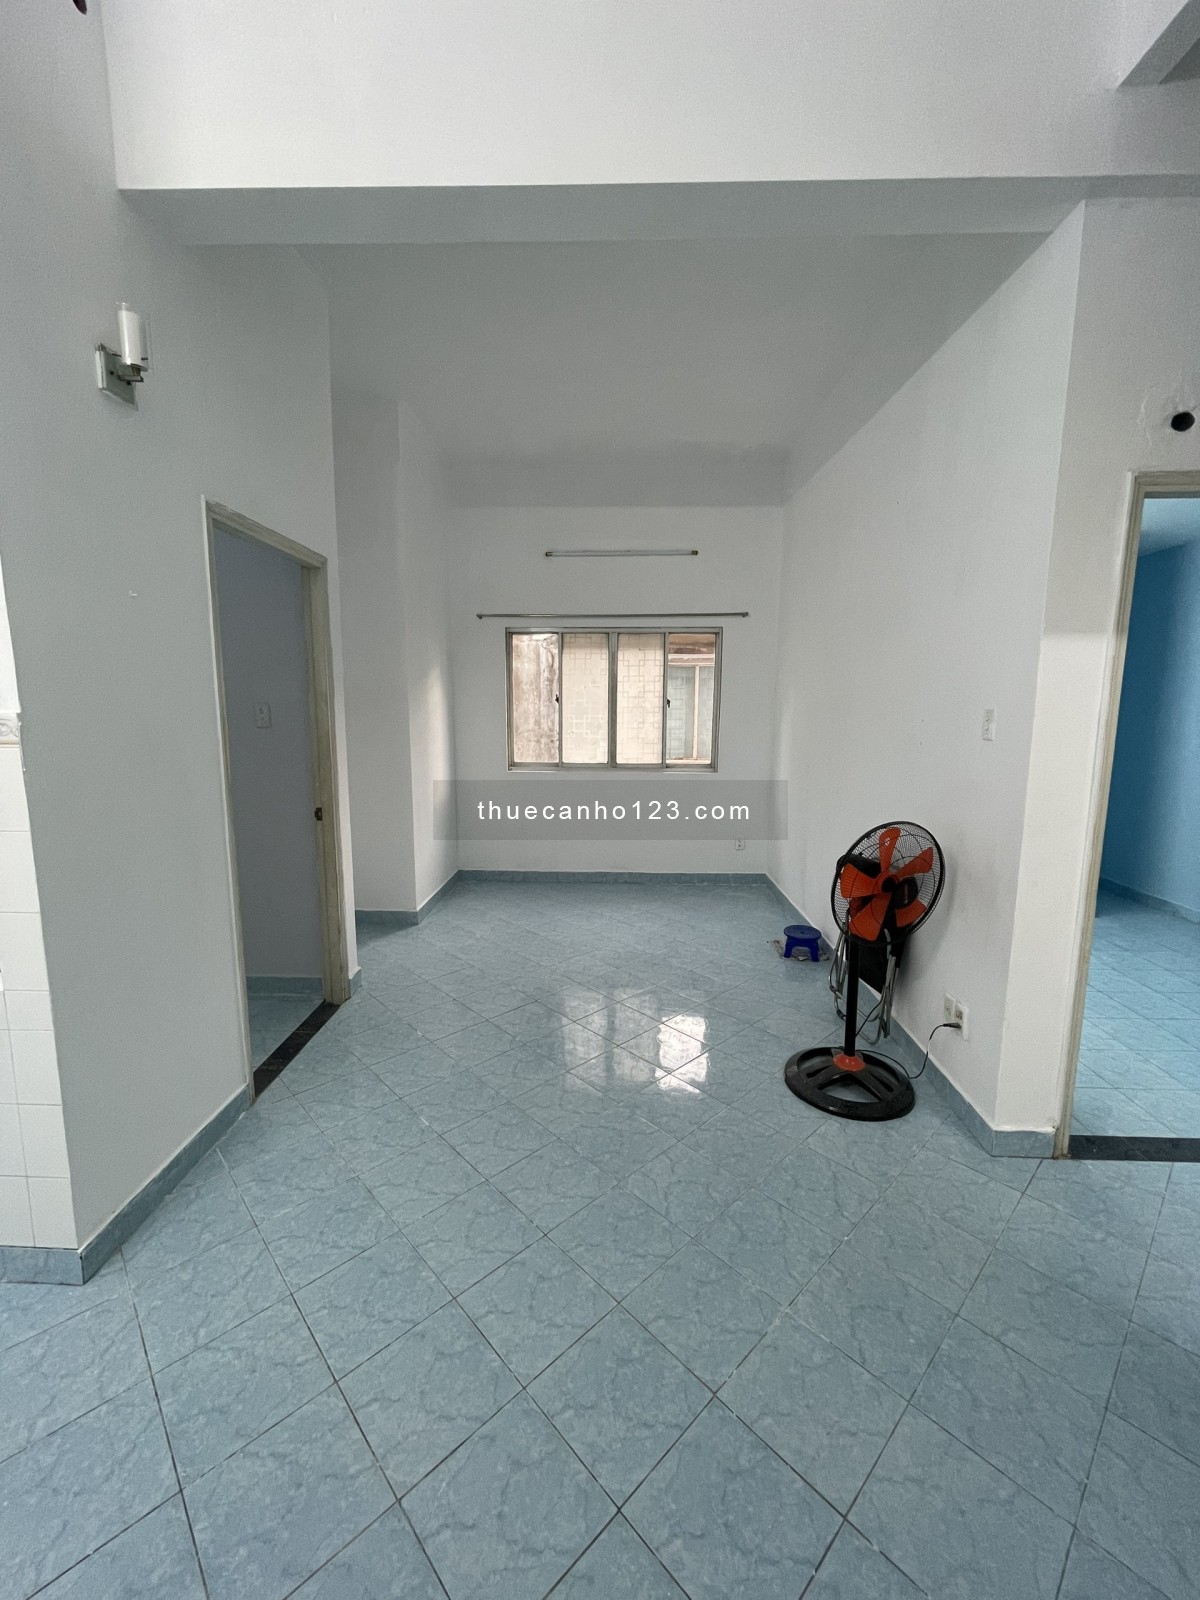 Cần cho thuê căn hộ 203 Nguyễn Trãi, Q.1, 80m, 3pn, 2wc, sân phơi, nhà có nội thất cơ bản, máy lạnh,